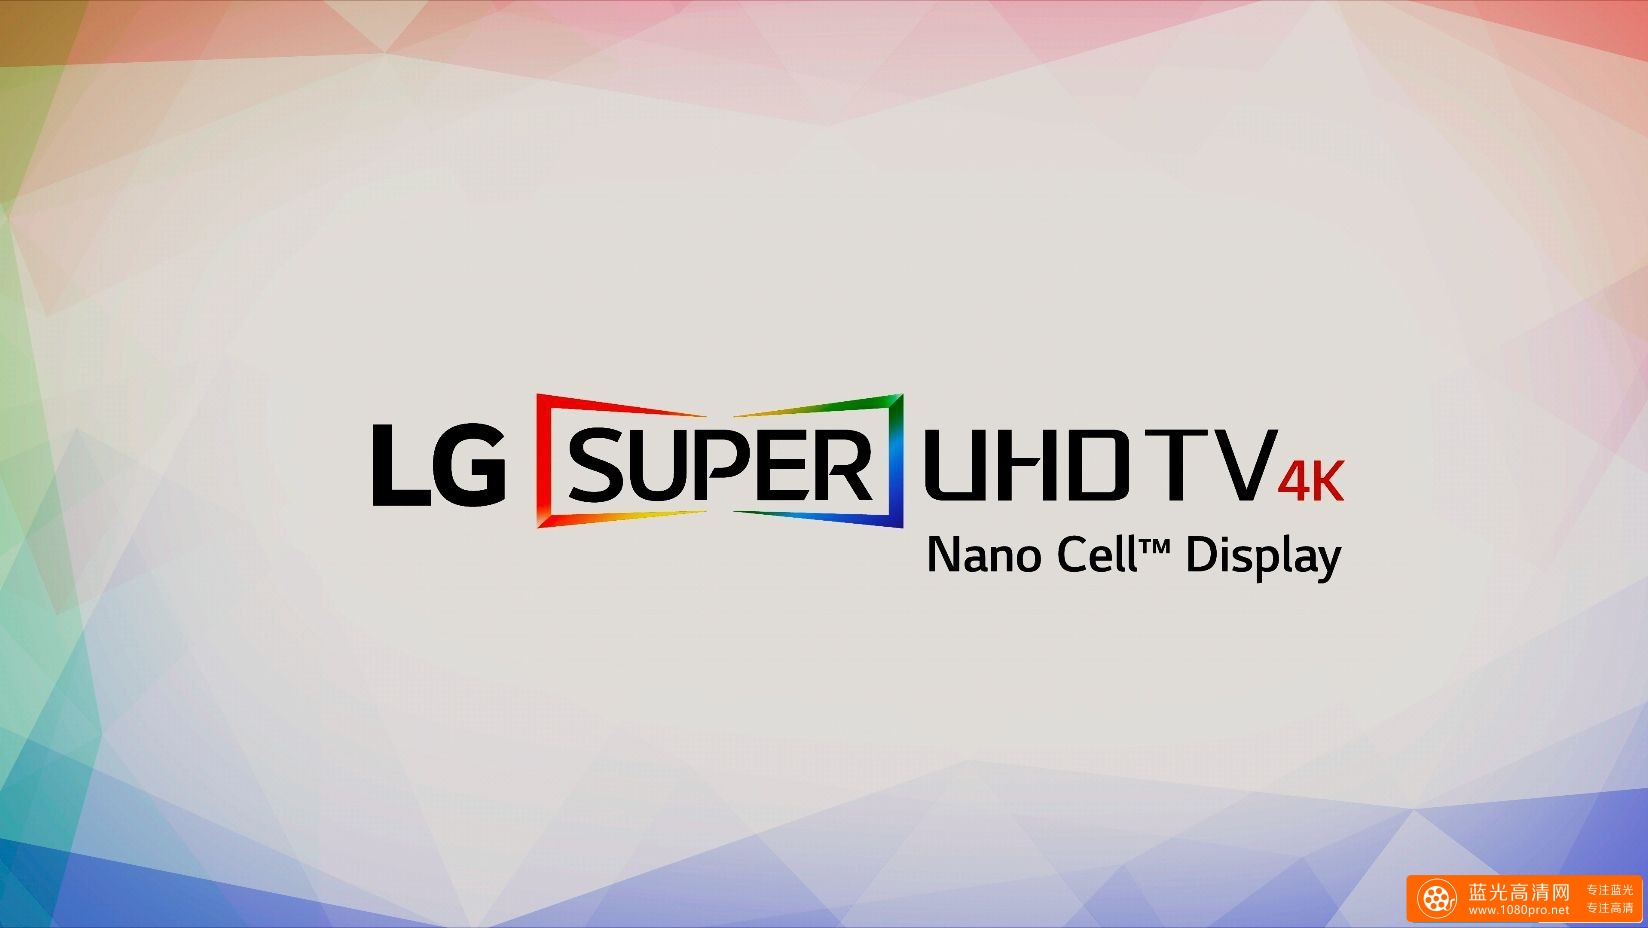 LG 4K HDR 演示片 - 时尚纽约 (HEVC 10bit) [2160P/TS/448MB]